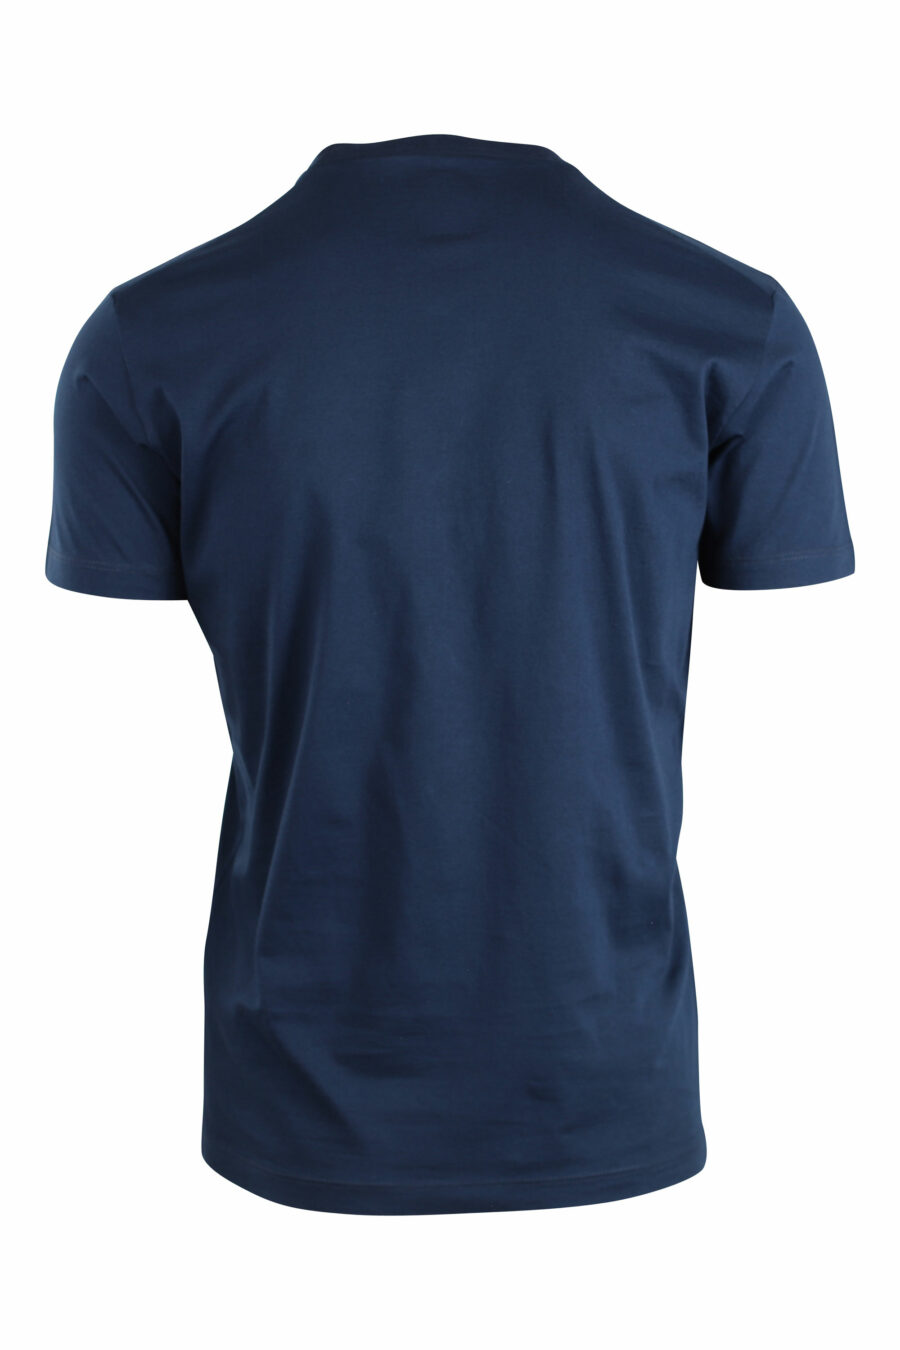 Camiseta azul oscura con maxilogo y hoja - IMG 2643